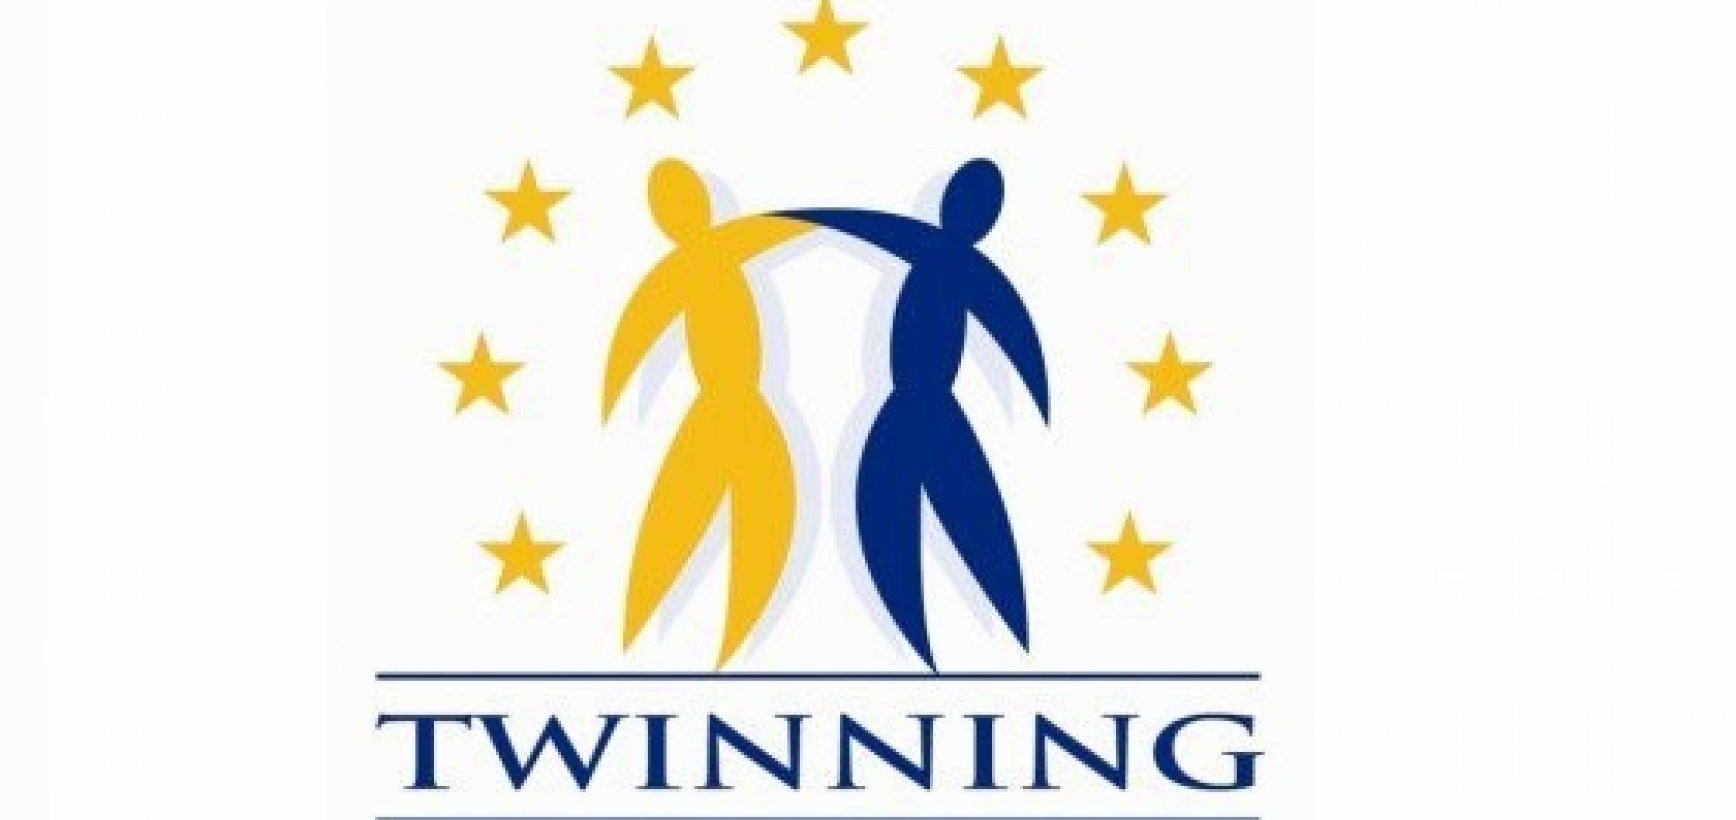 Europos Komisija įvertino Lietuvos patirtį Dvynių programoje    